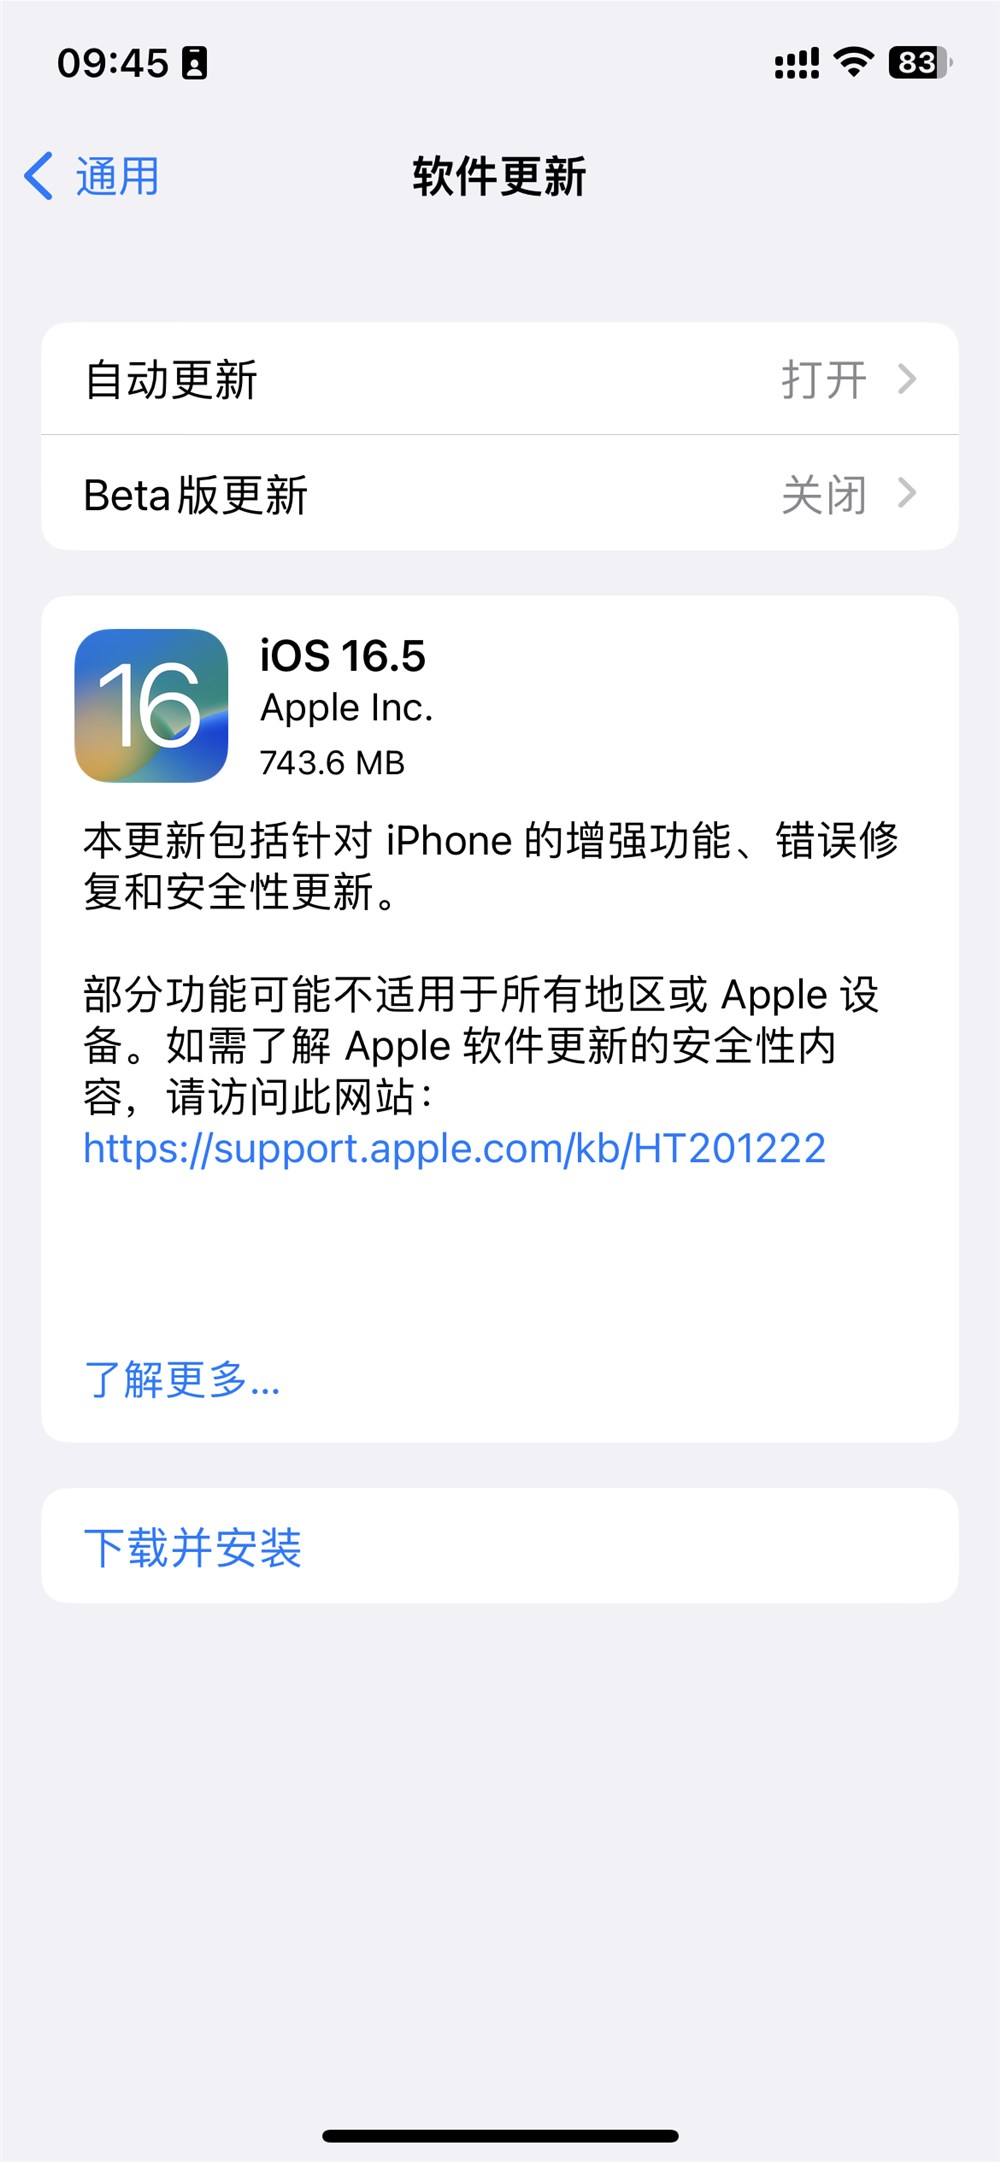 苹果发布 iOS 16.5 系统更新：修复一长串安全漏洞及增强功能